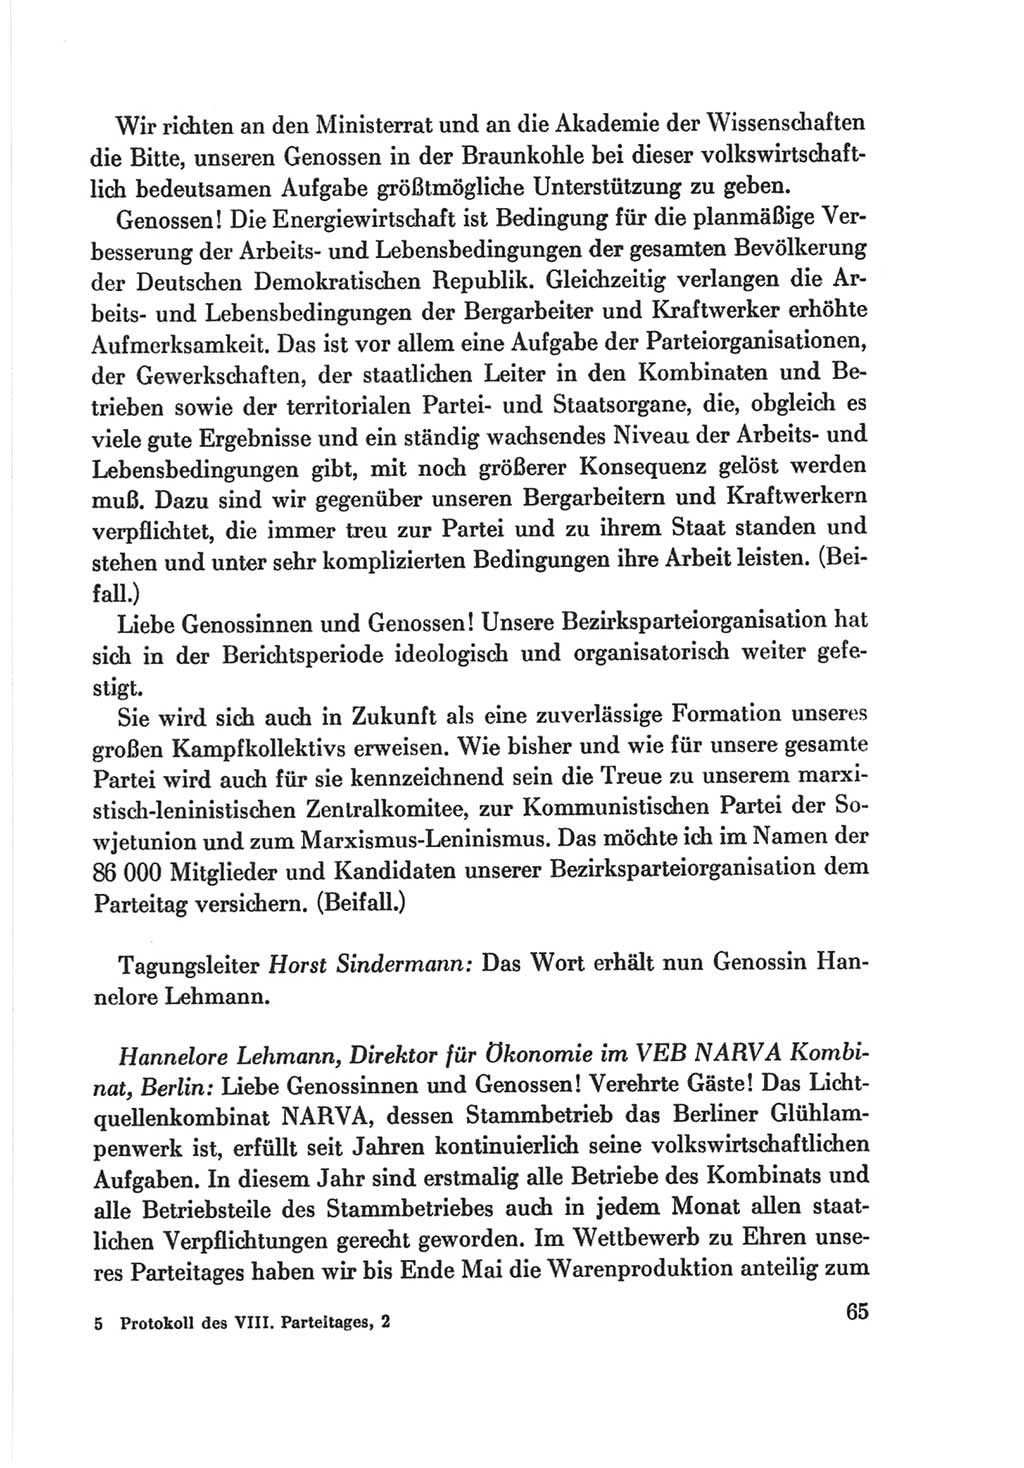 Protokoll der Verhandlungen des Ⅷ. Parteitages der Sozialistischen Einheitspartei Deutschlands (SED) [Deutsche Demokratische Republik (DDR)] 1971, Band 2, Seite 65 (Prot. Verh. Ⅷ. PT SED DDR 1971, Bd. 2, S. 65)